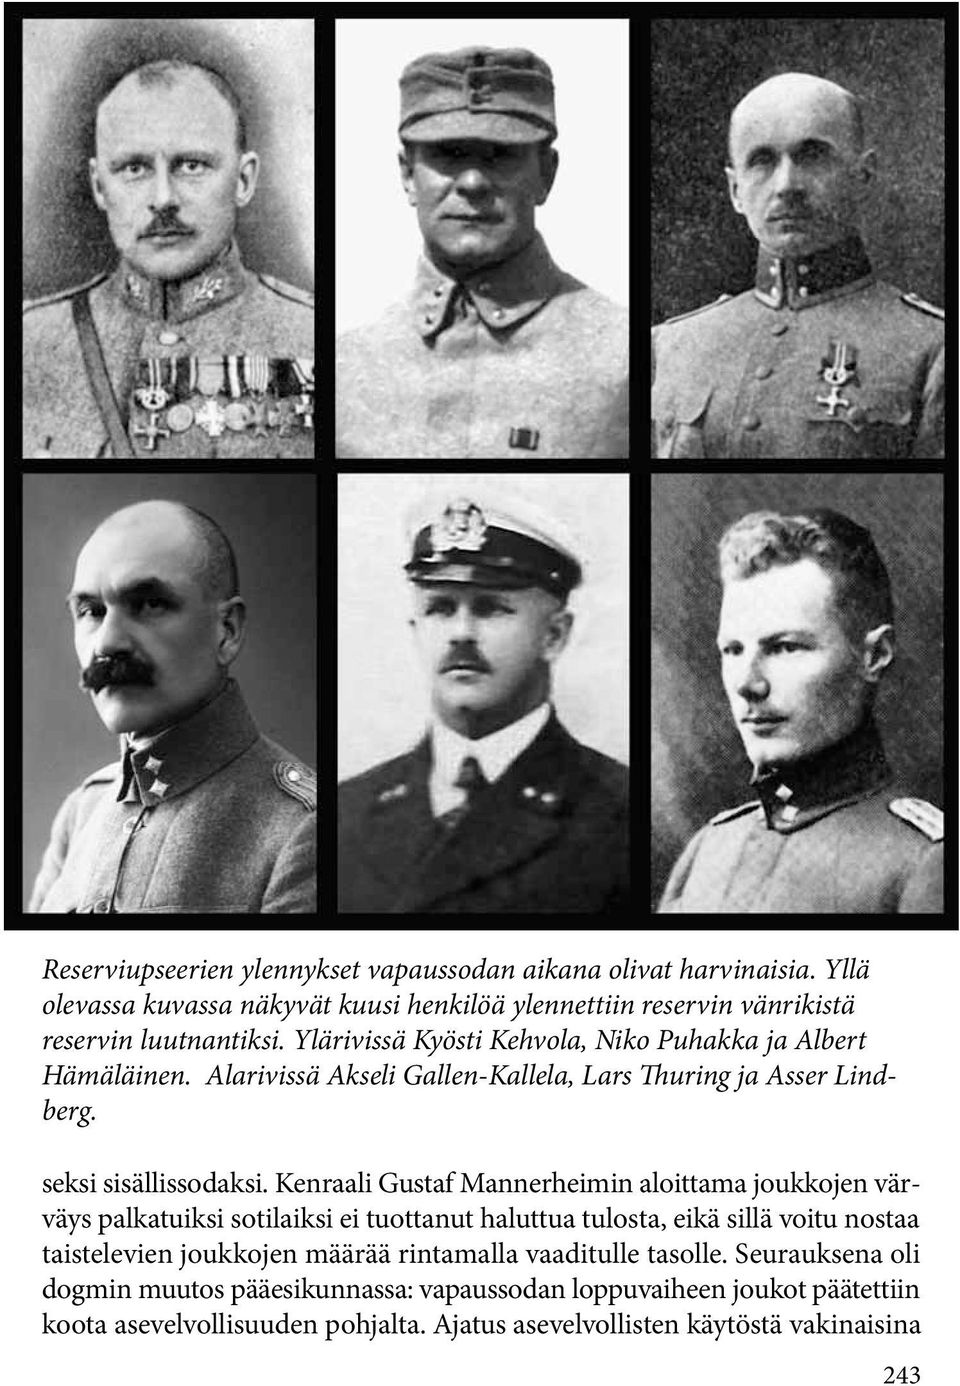 Kenraali Gustaf Mannerheimin aloittama joukkojen värväys palkatuiksi sotilaiksi ei tuottanut haluttua tulosta, eikä sillä voitu nostaa taistelevien joukkojen määrää